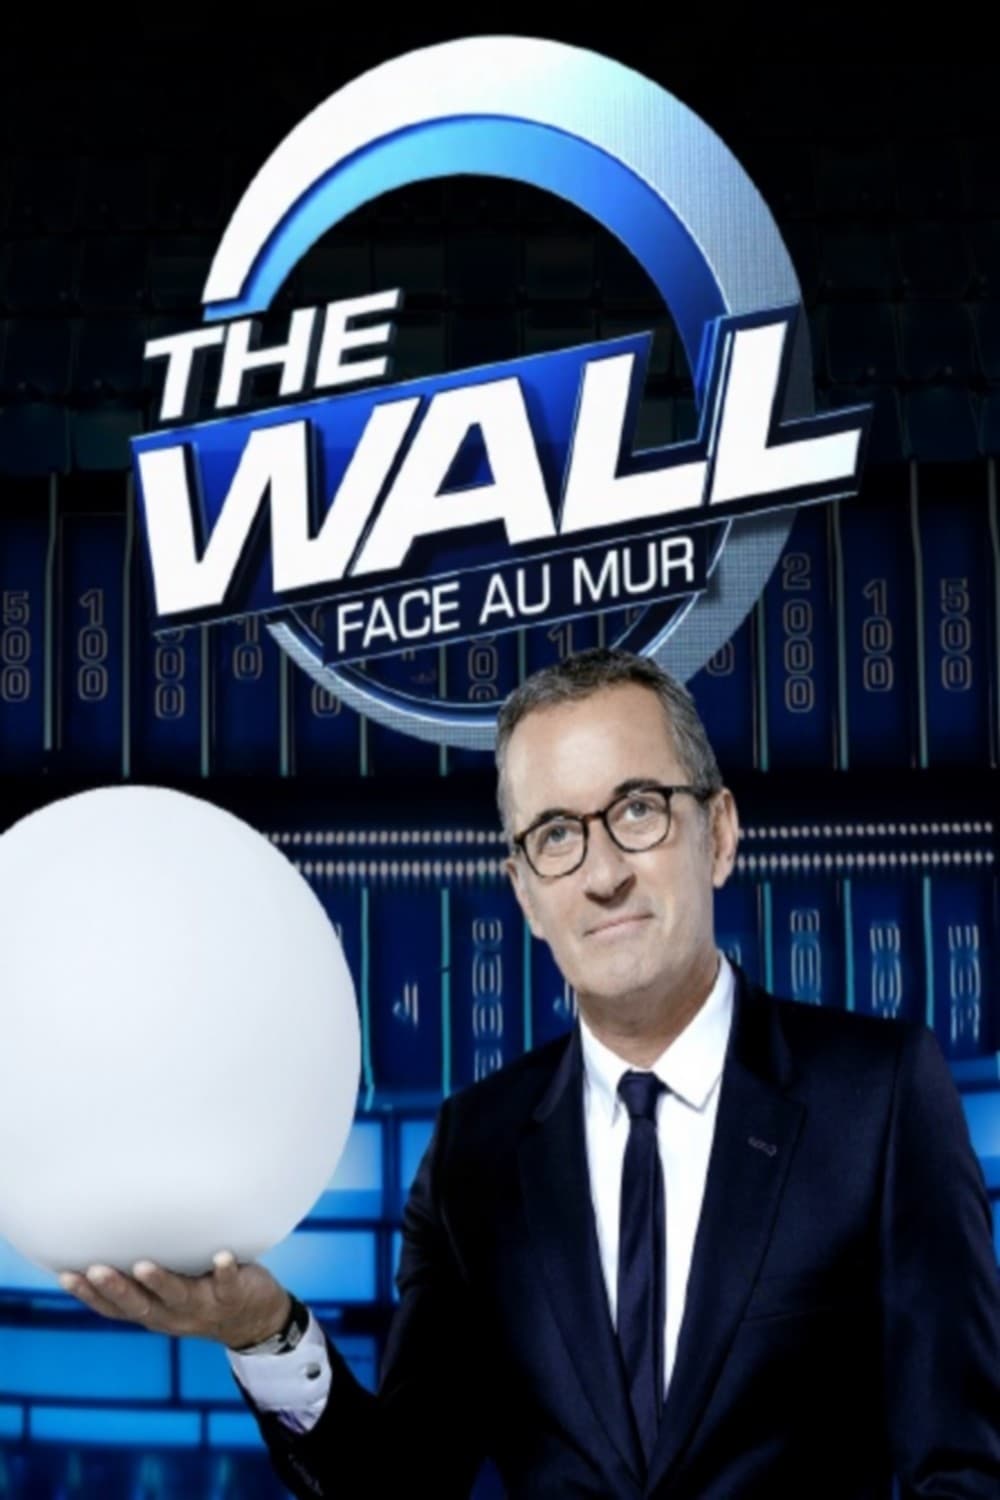 The Wall : Face au mur